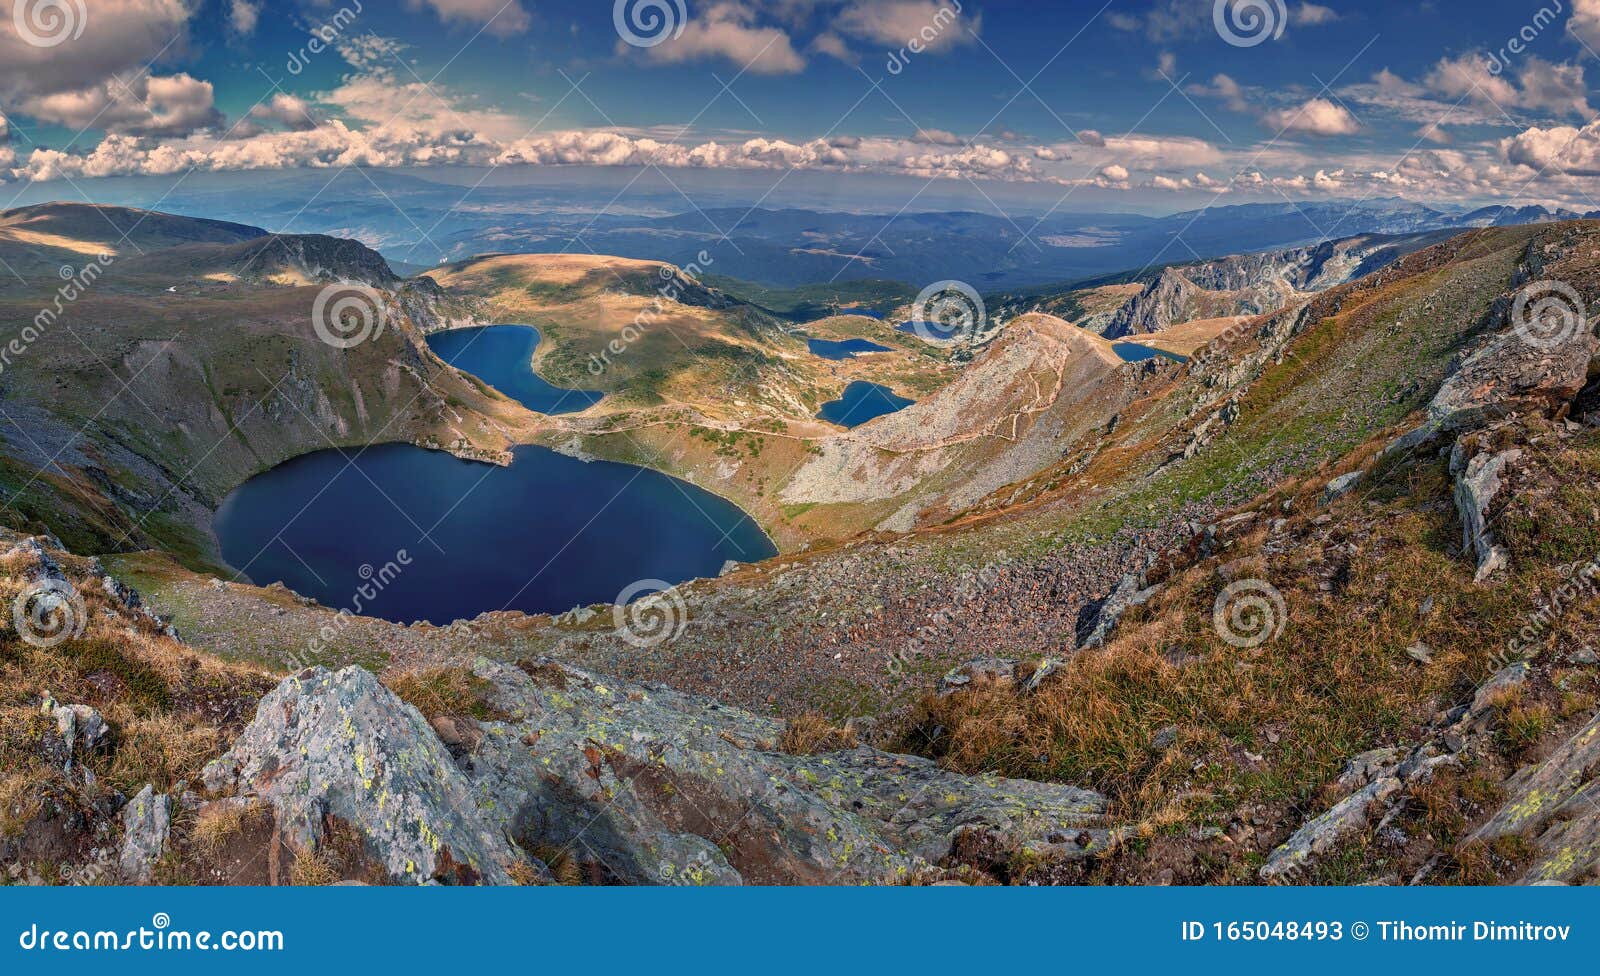 the seven rila lakes in national rila park